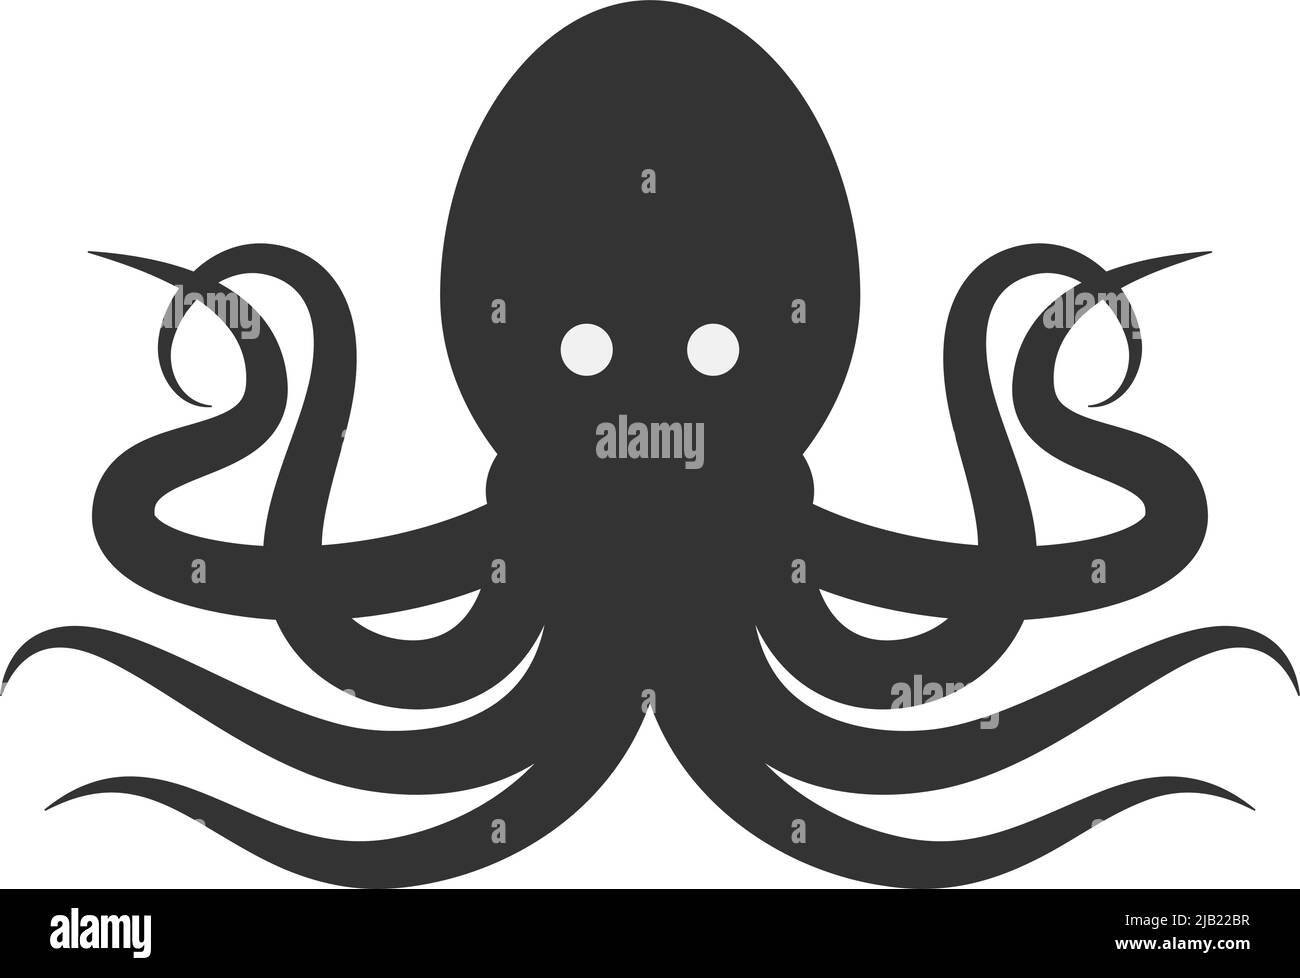 black kraken symbol isolated on white background, vector illustration Stock Vector